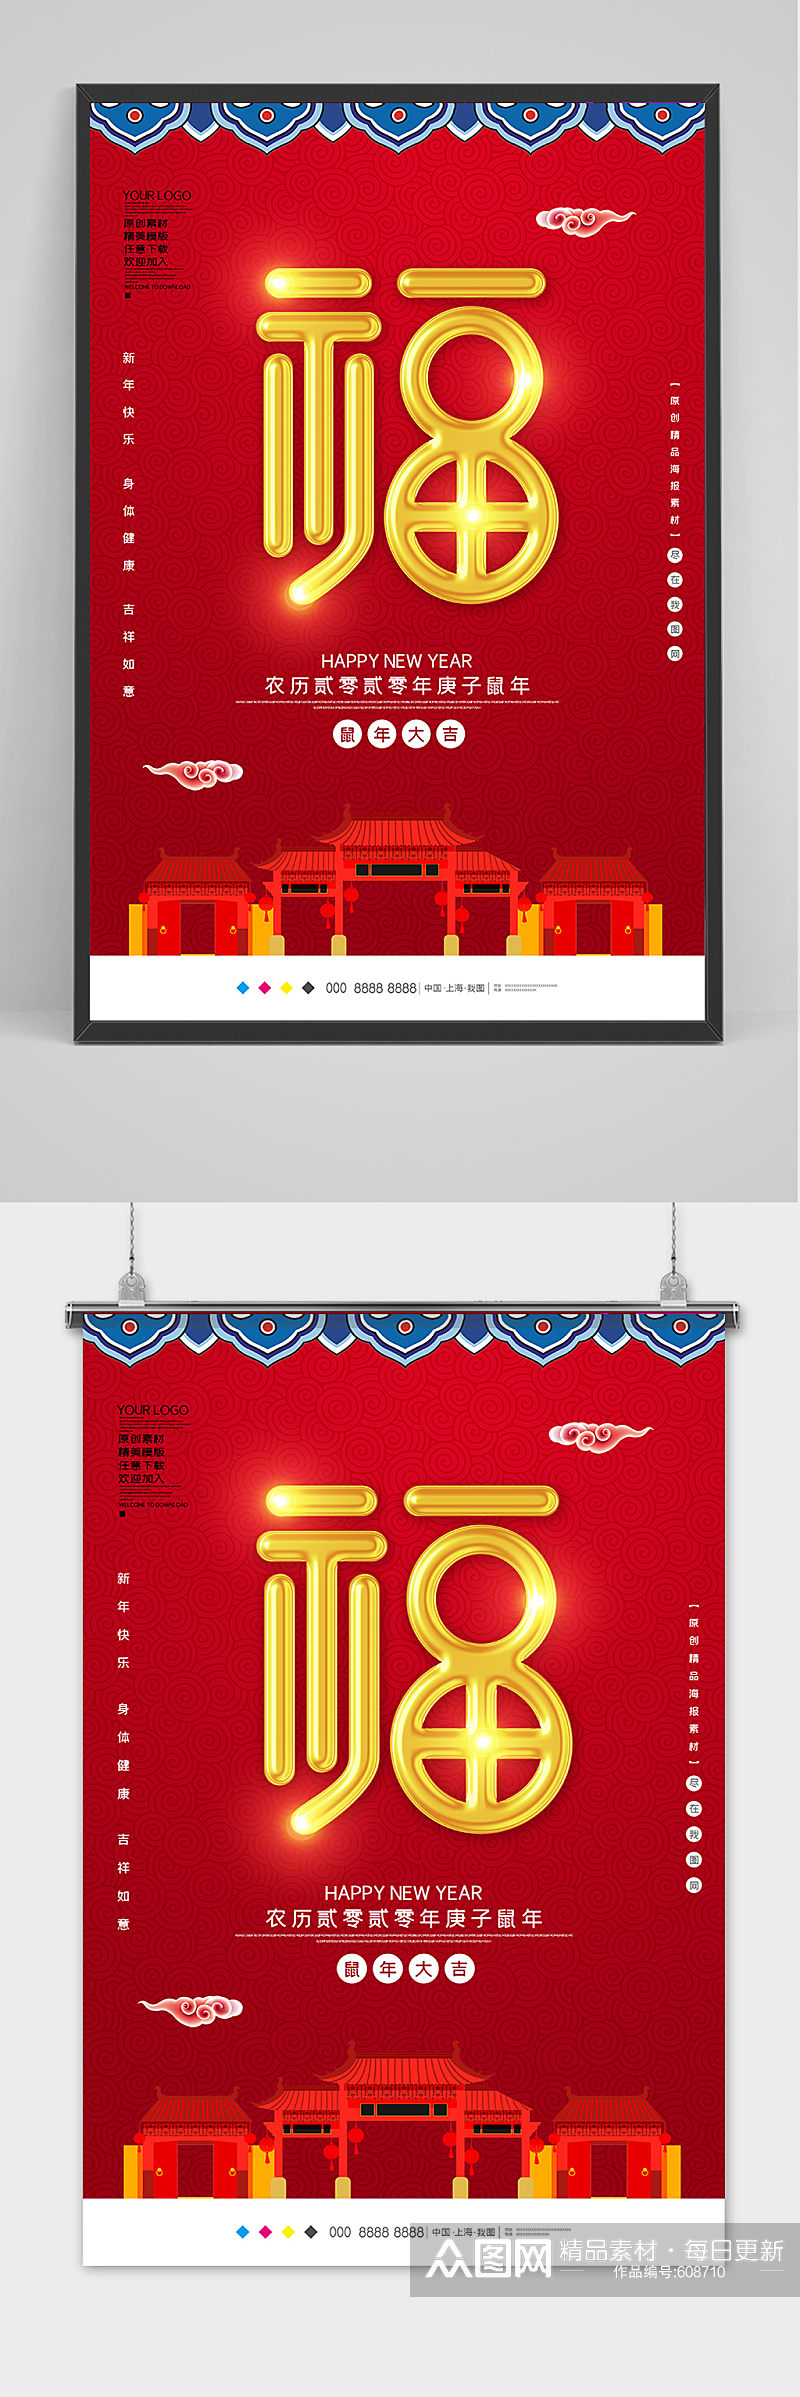 创意中国风福春节海报设计素材